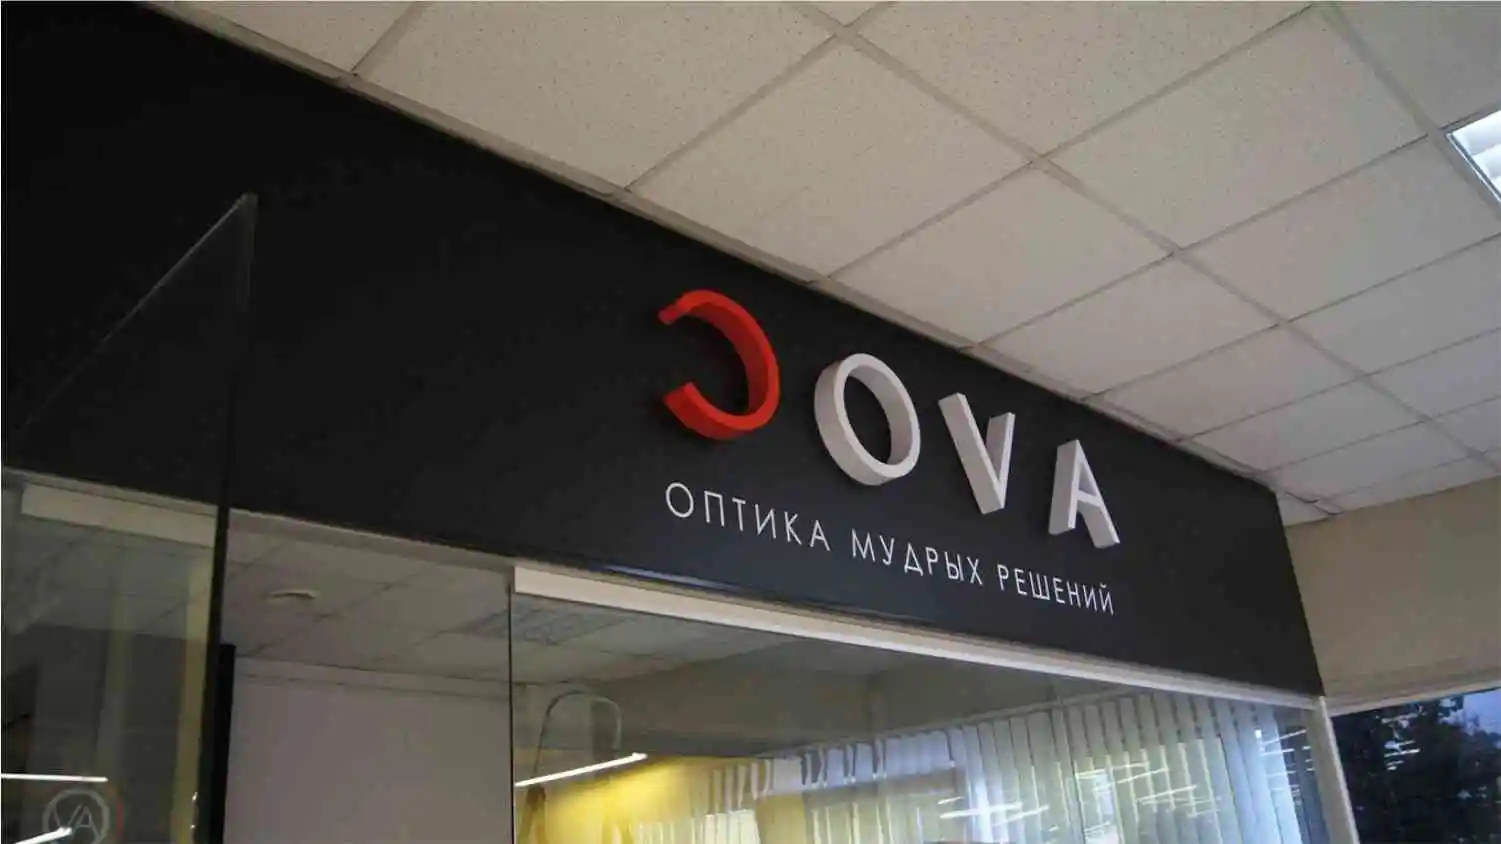 Cova - несветовые буквы для вывески магазина оптики